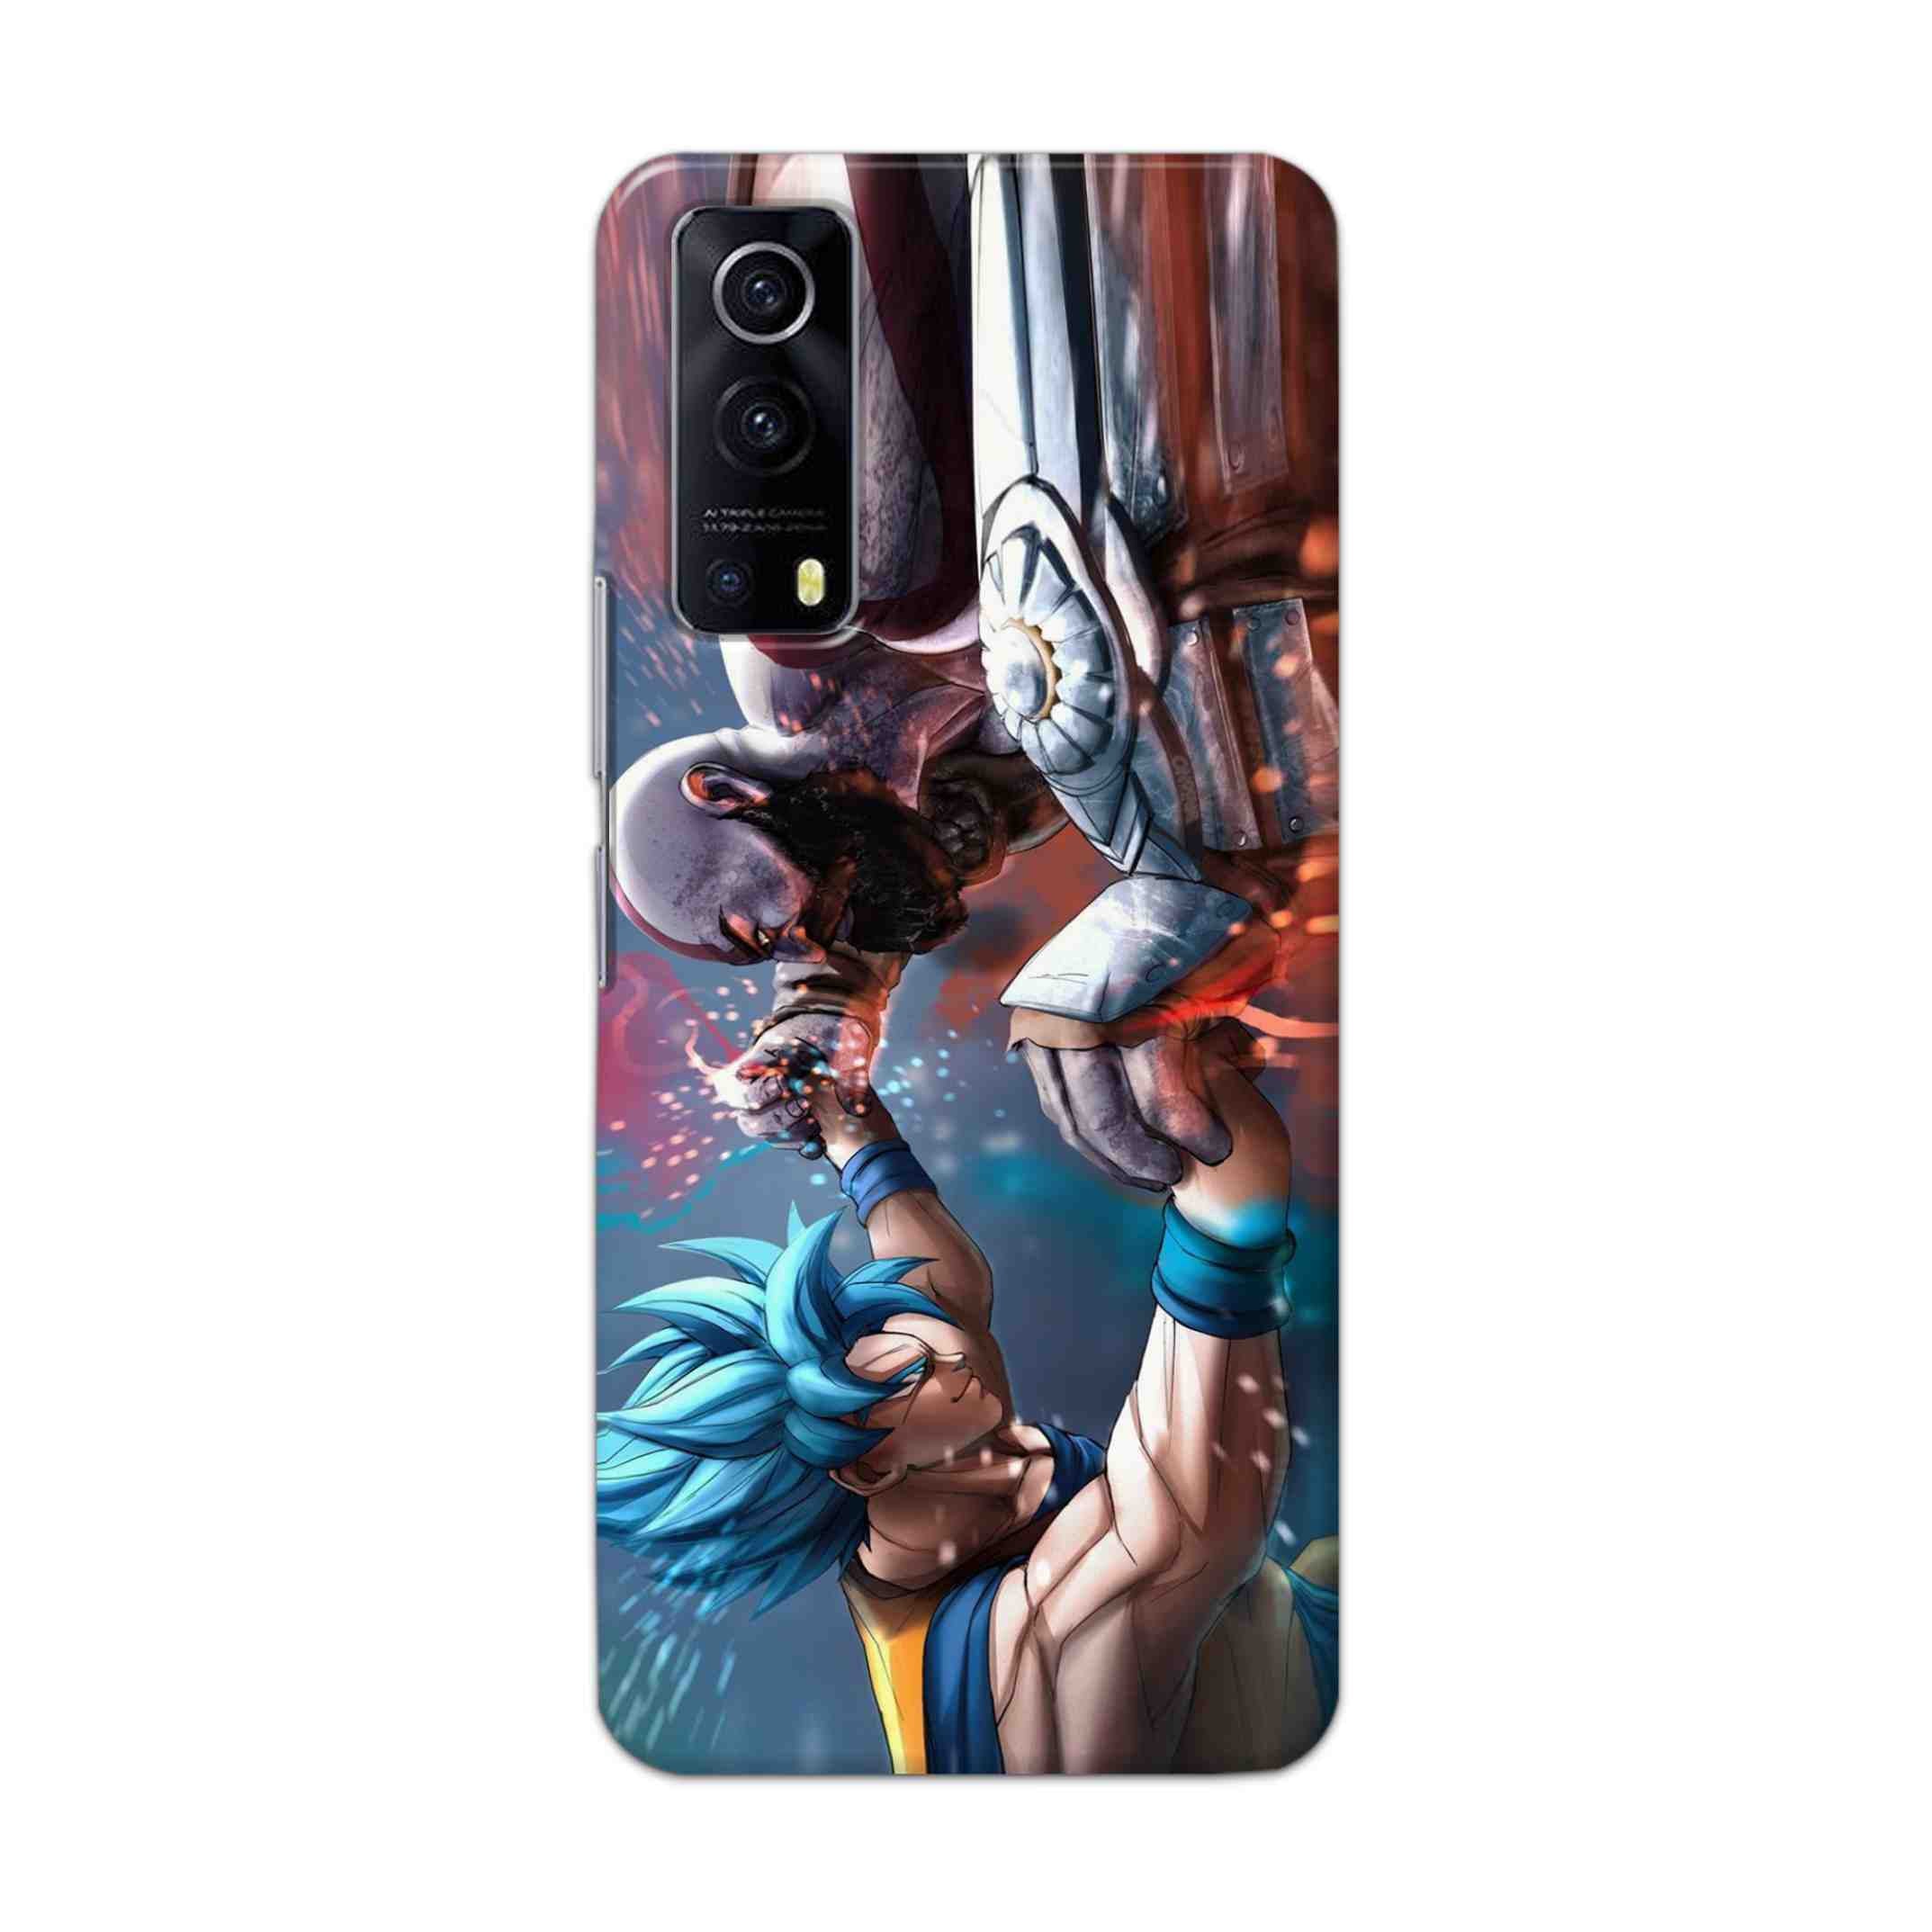 Buy Goku Vs Kratos Hard Back Mobile Phone Case Cover For Vivo IQOO Z3 Online